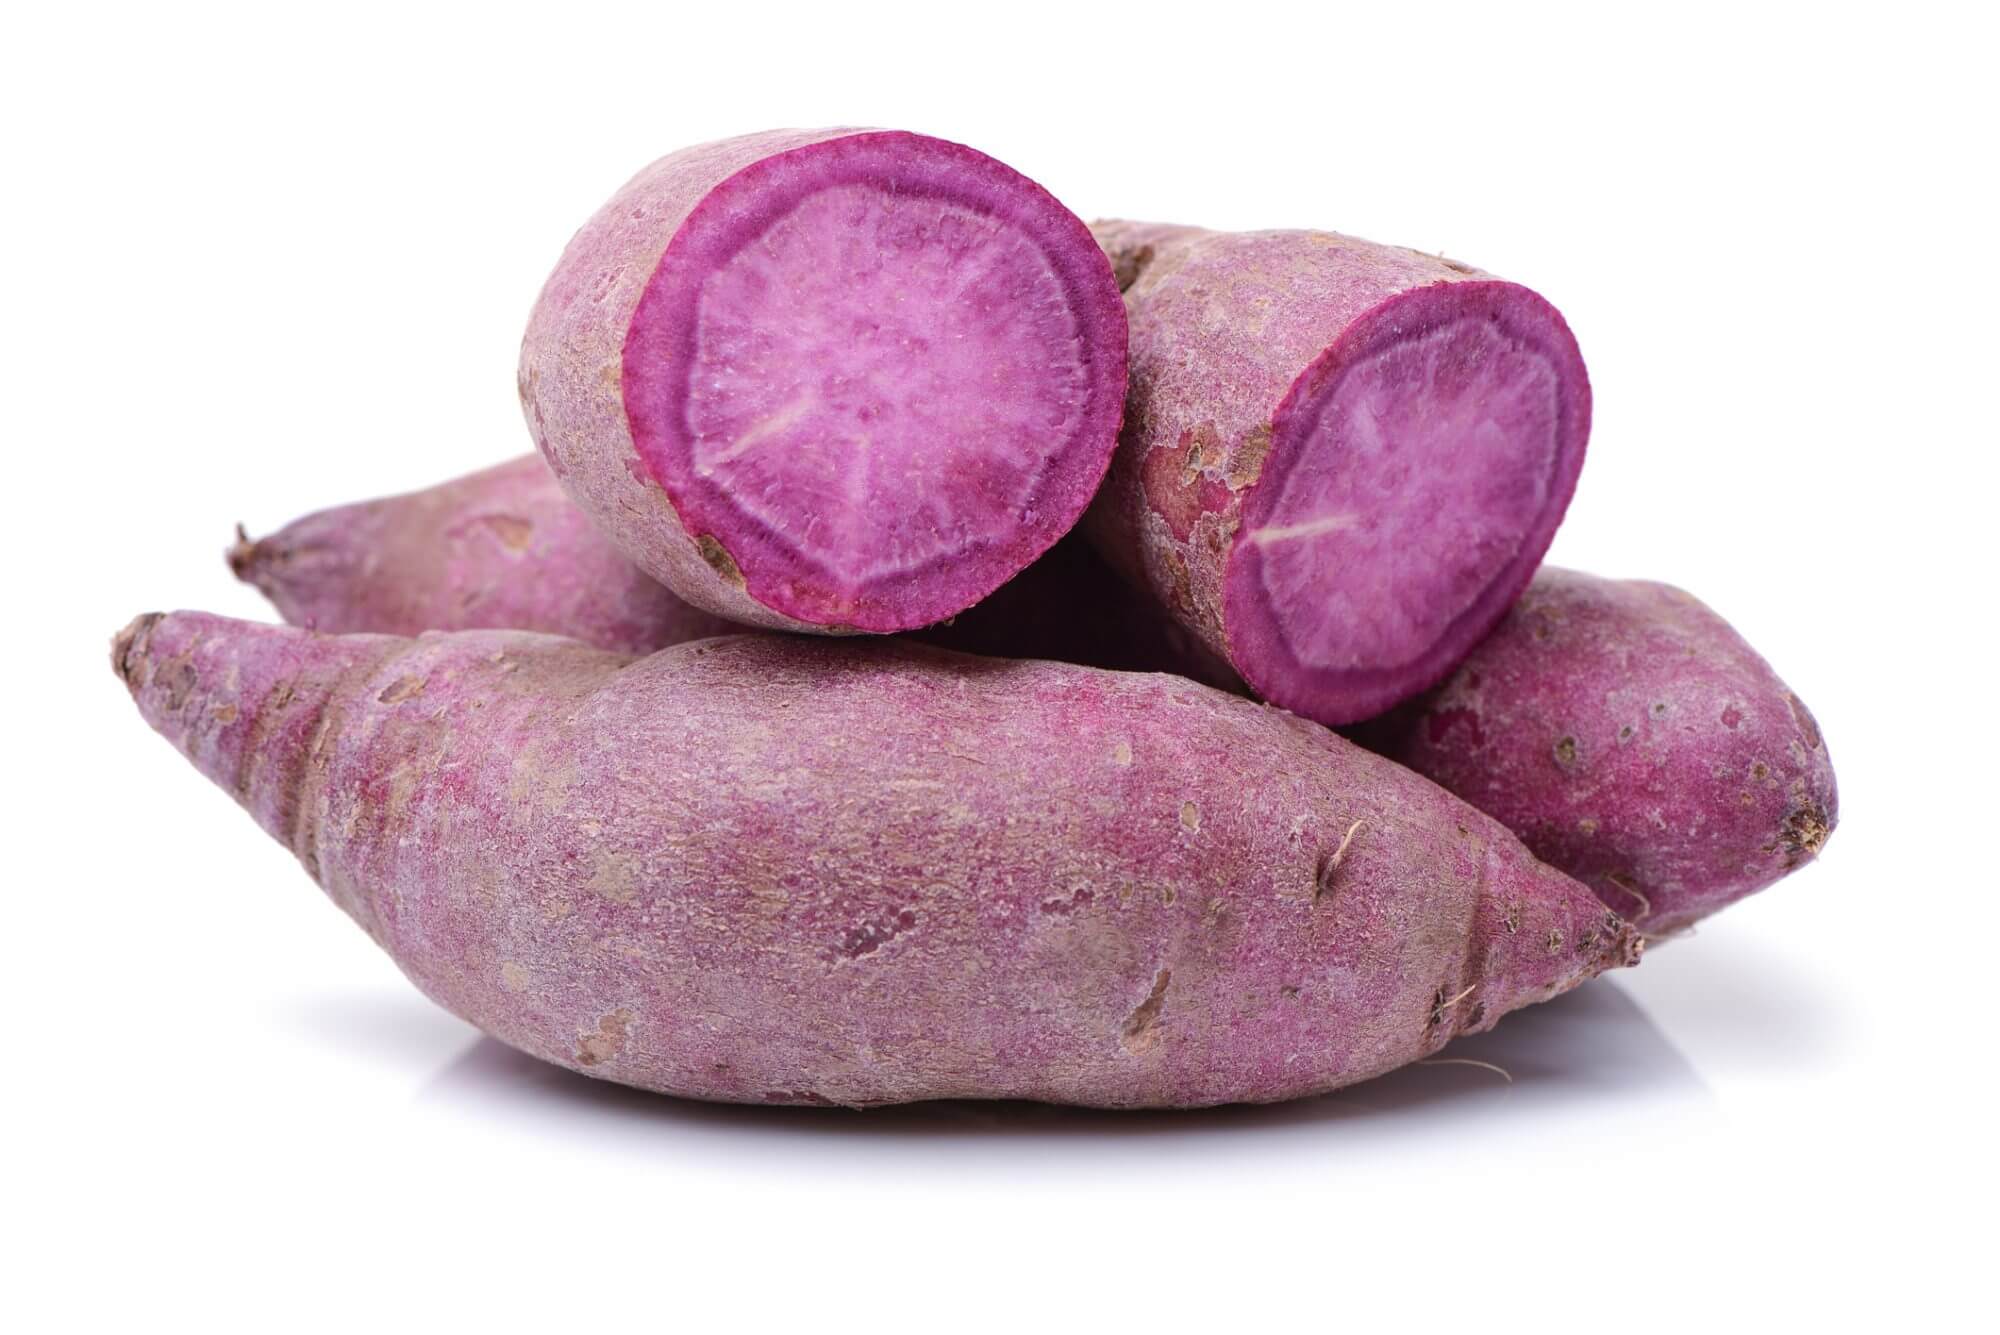 Purple sweet potato powder wholesale Herb bio